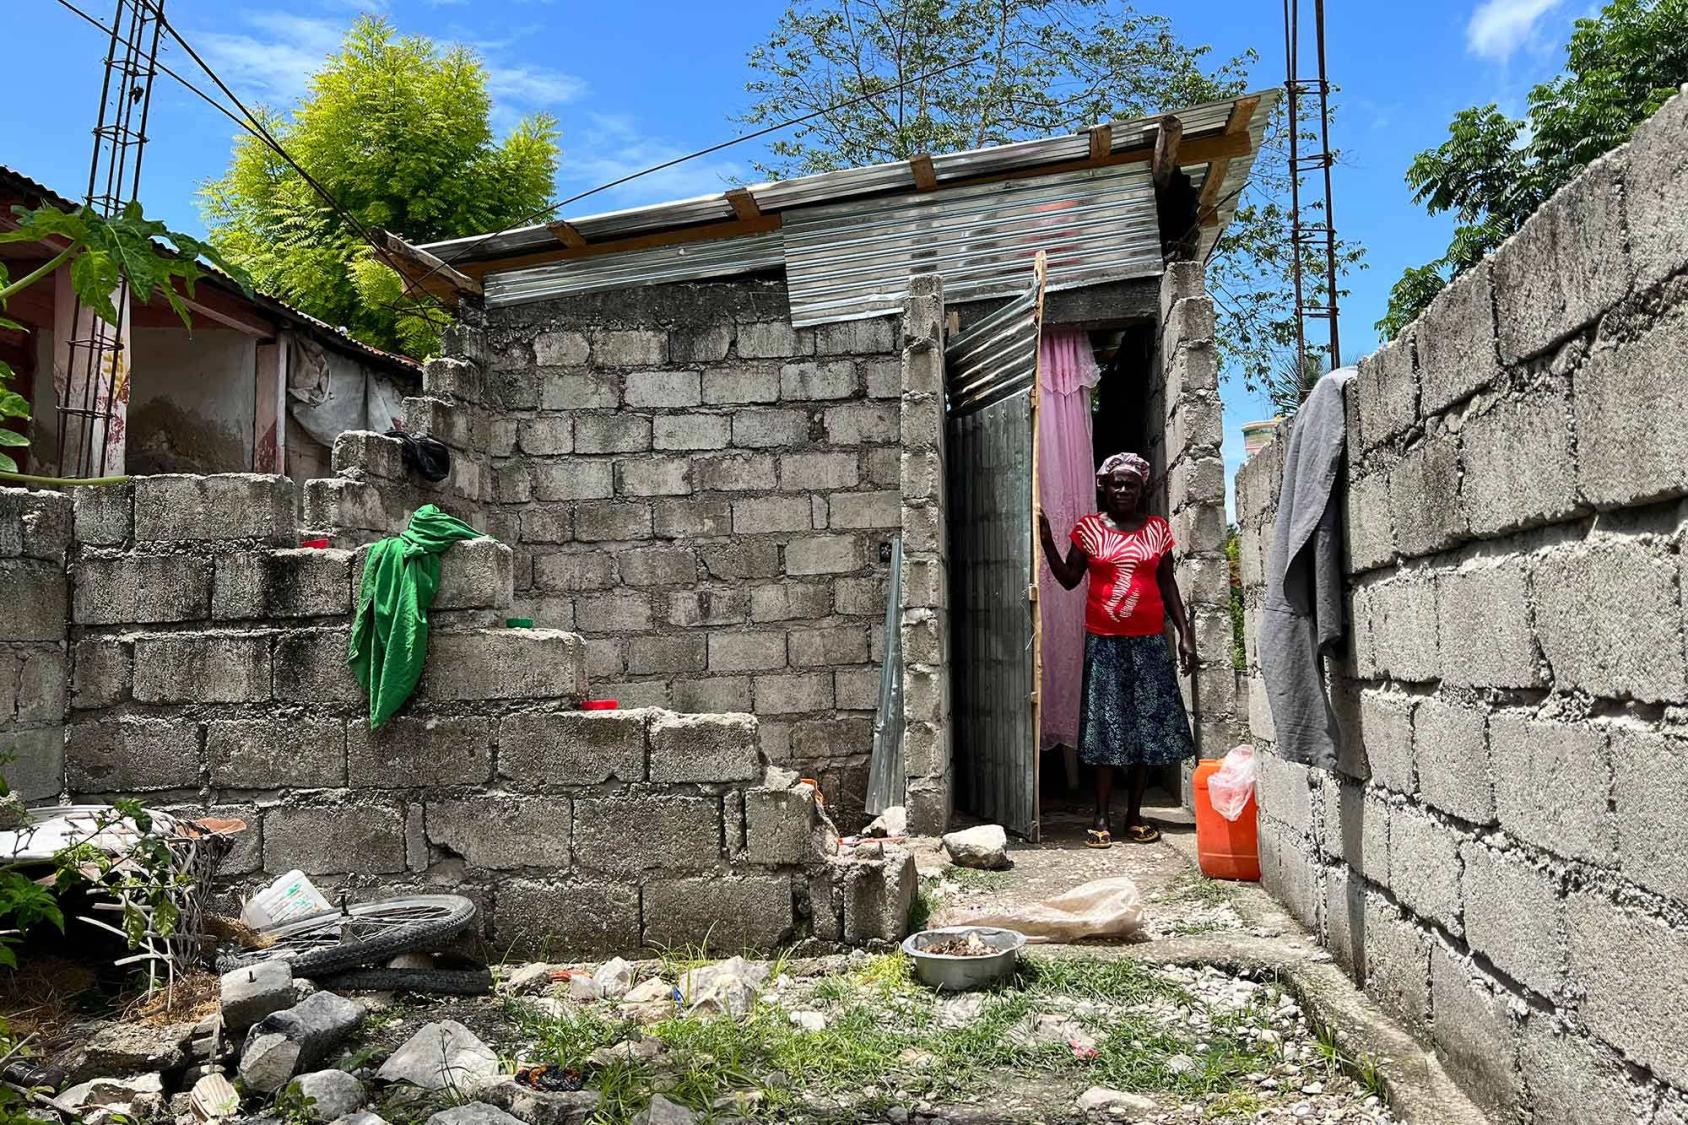 Una mujer en Haití se encuentra en una puerta que da a un patio exterior cerrado por paredes sin pintar.